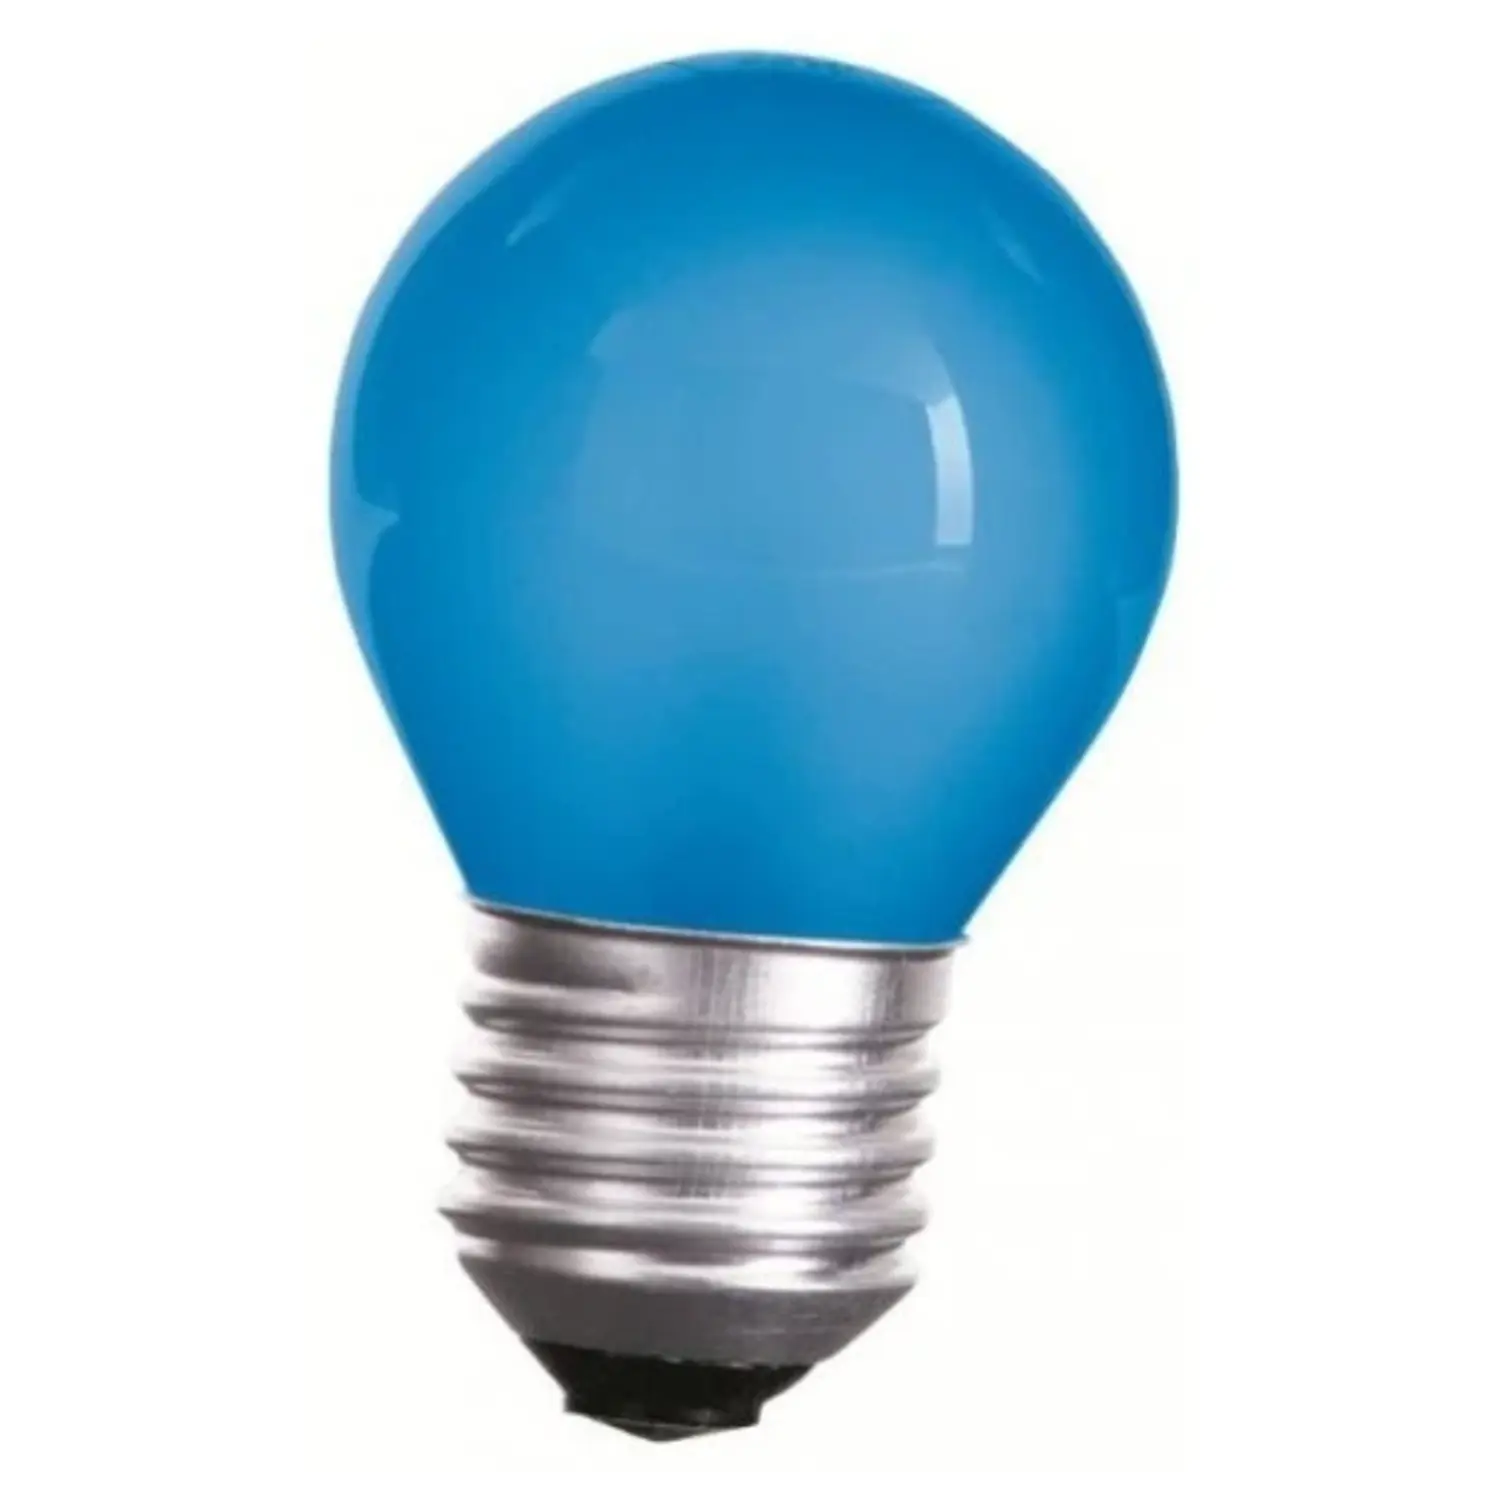 immagine del prodotto lampadina led mini globo 1 watt CE blu 220-240 volt 15000 ore spe woj11797